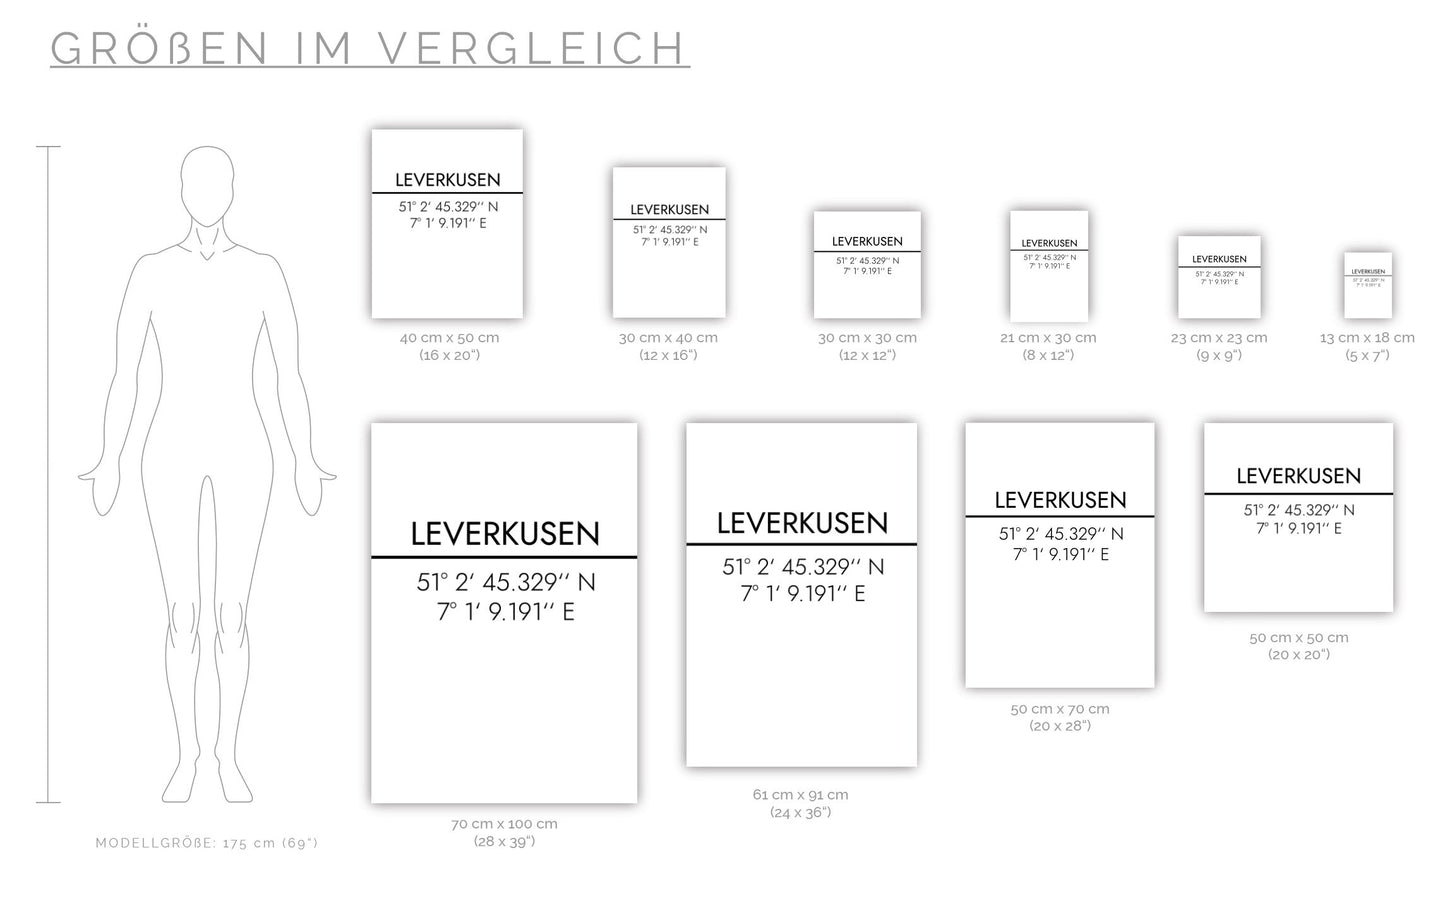 Poster Leverkusen Koordinaten #2